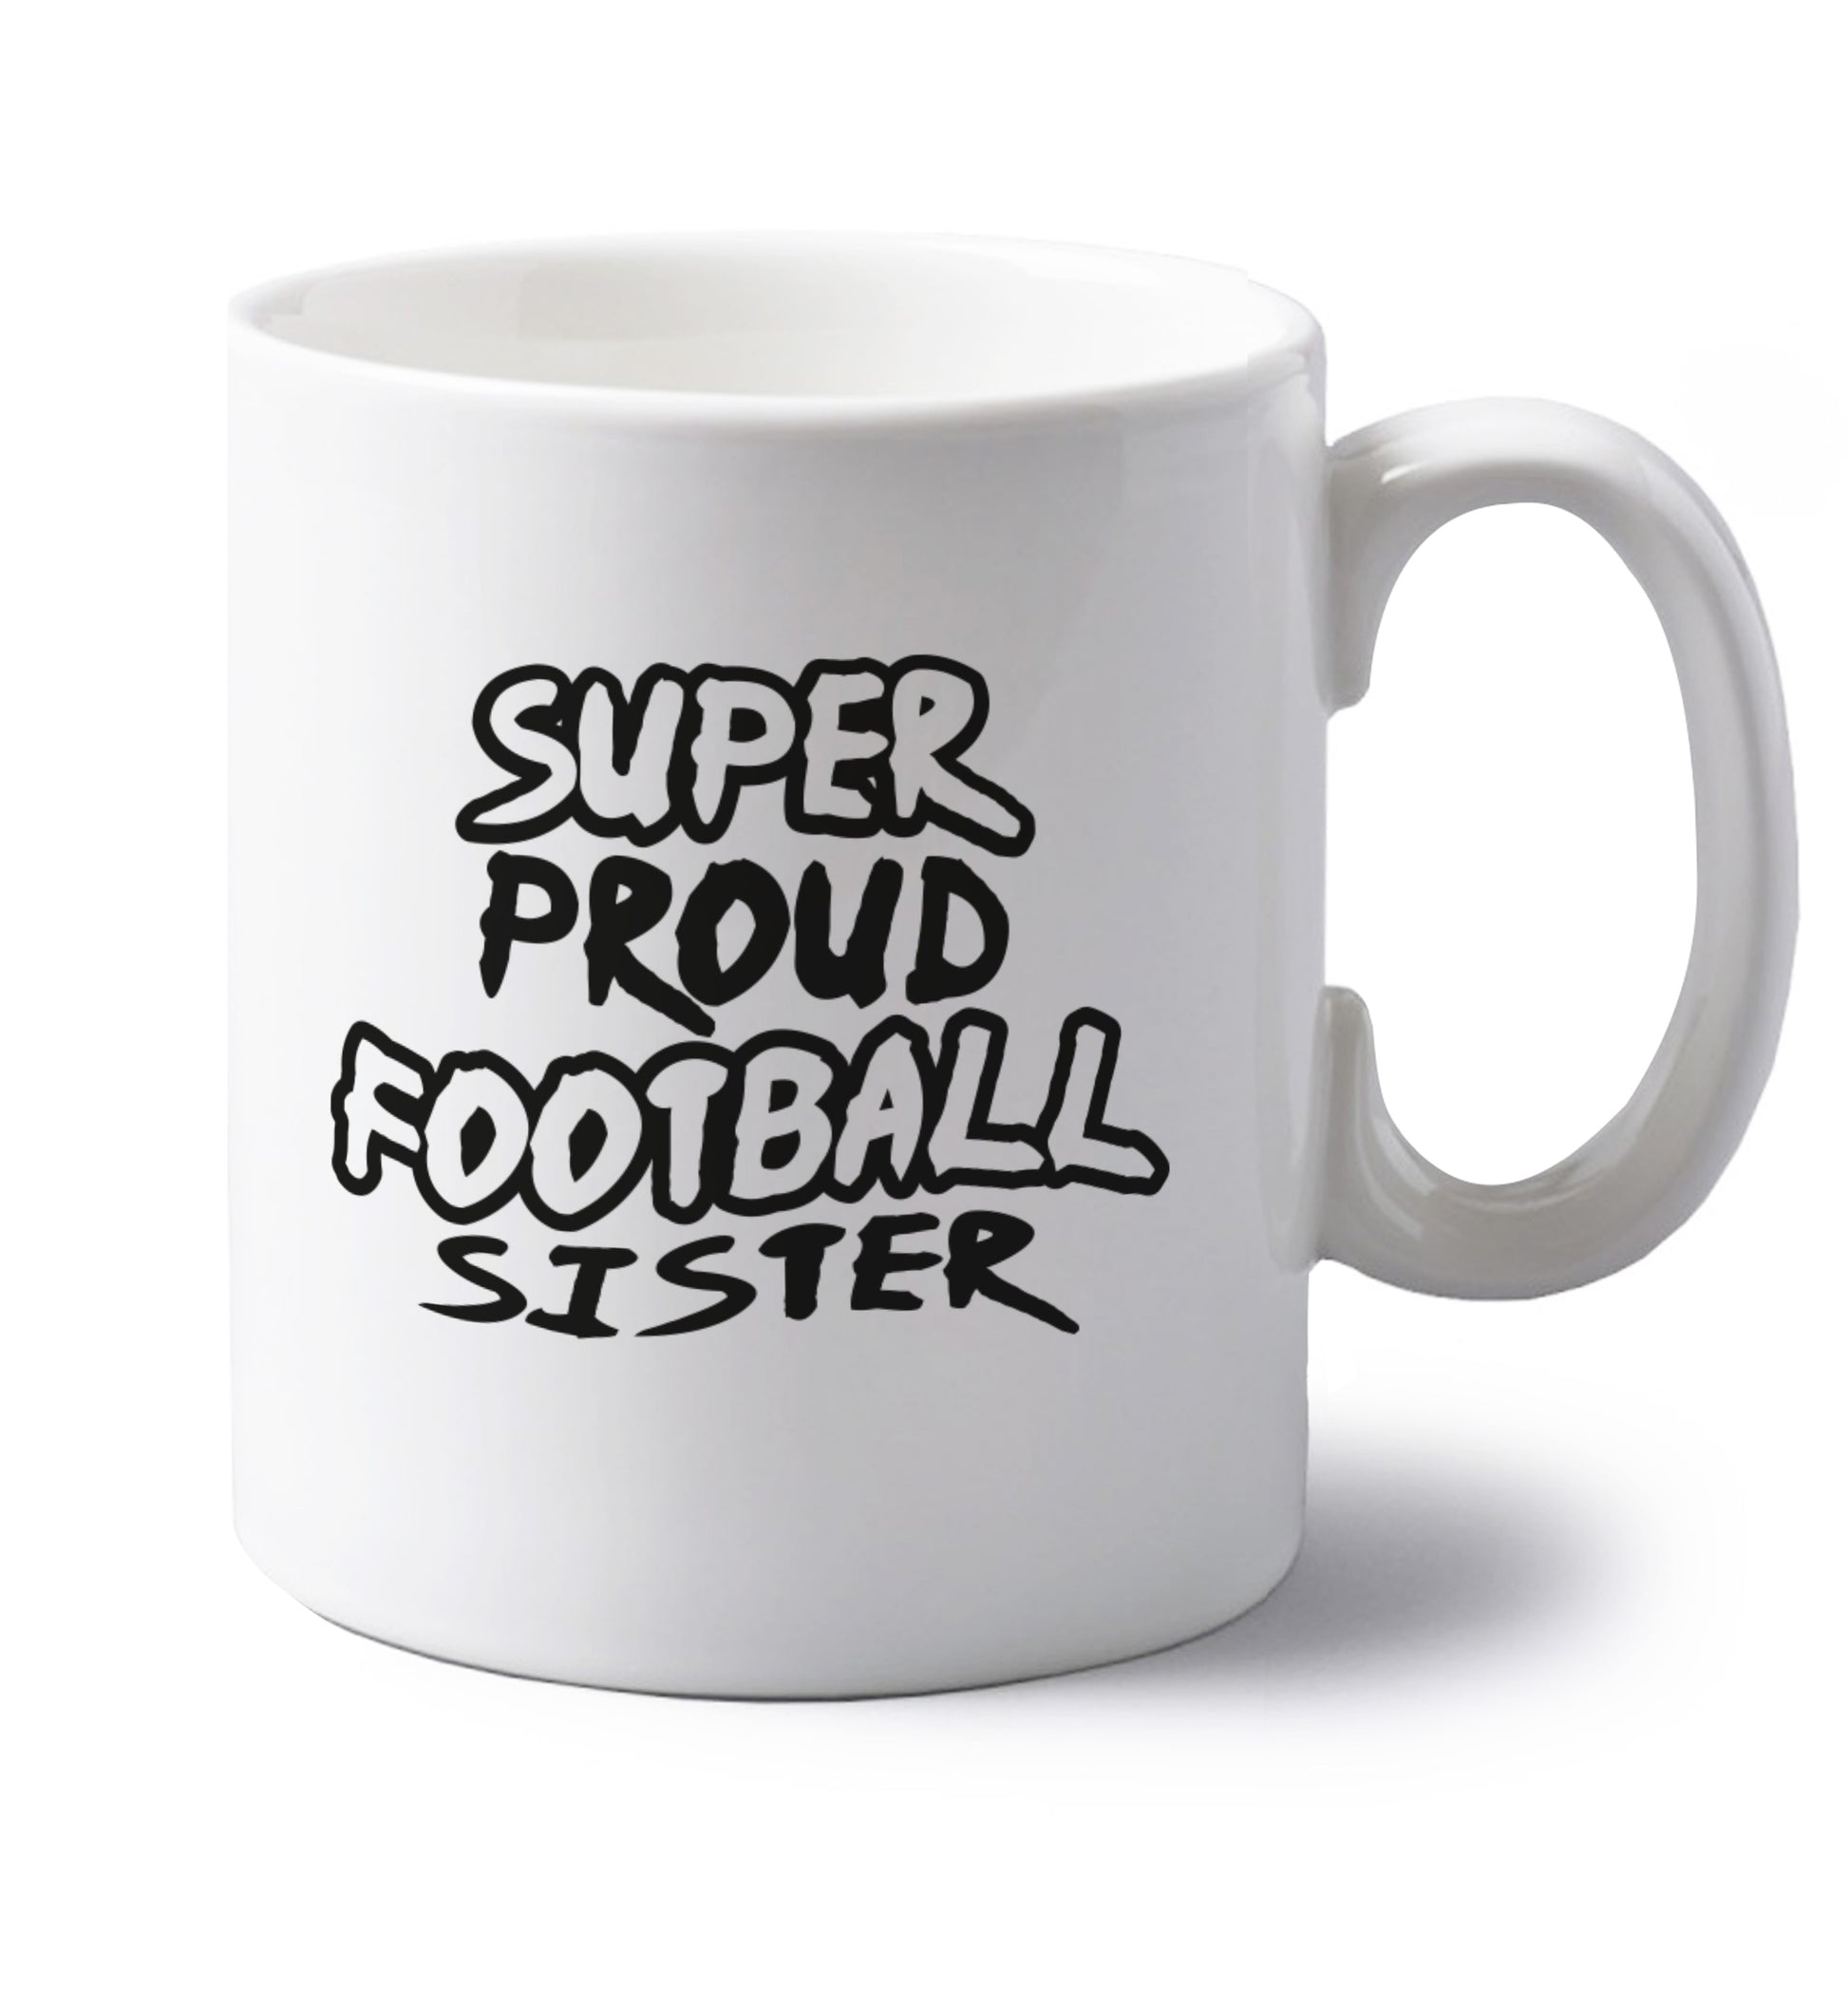 Super proud football sister left handed white ceramic mug 